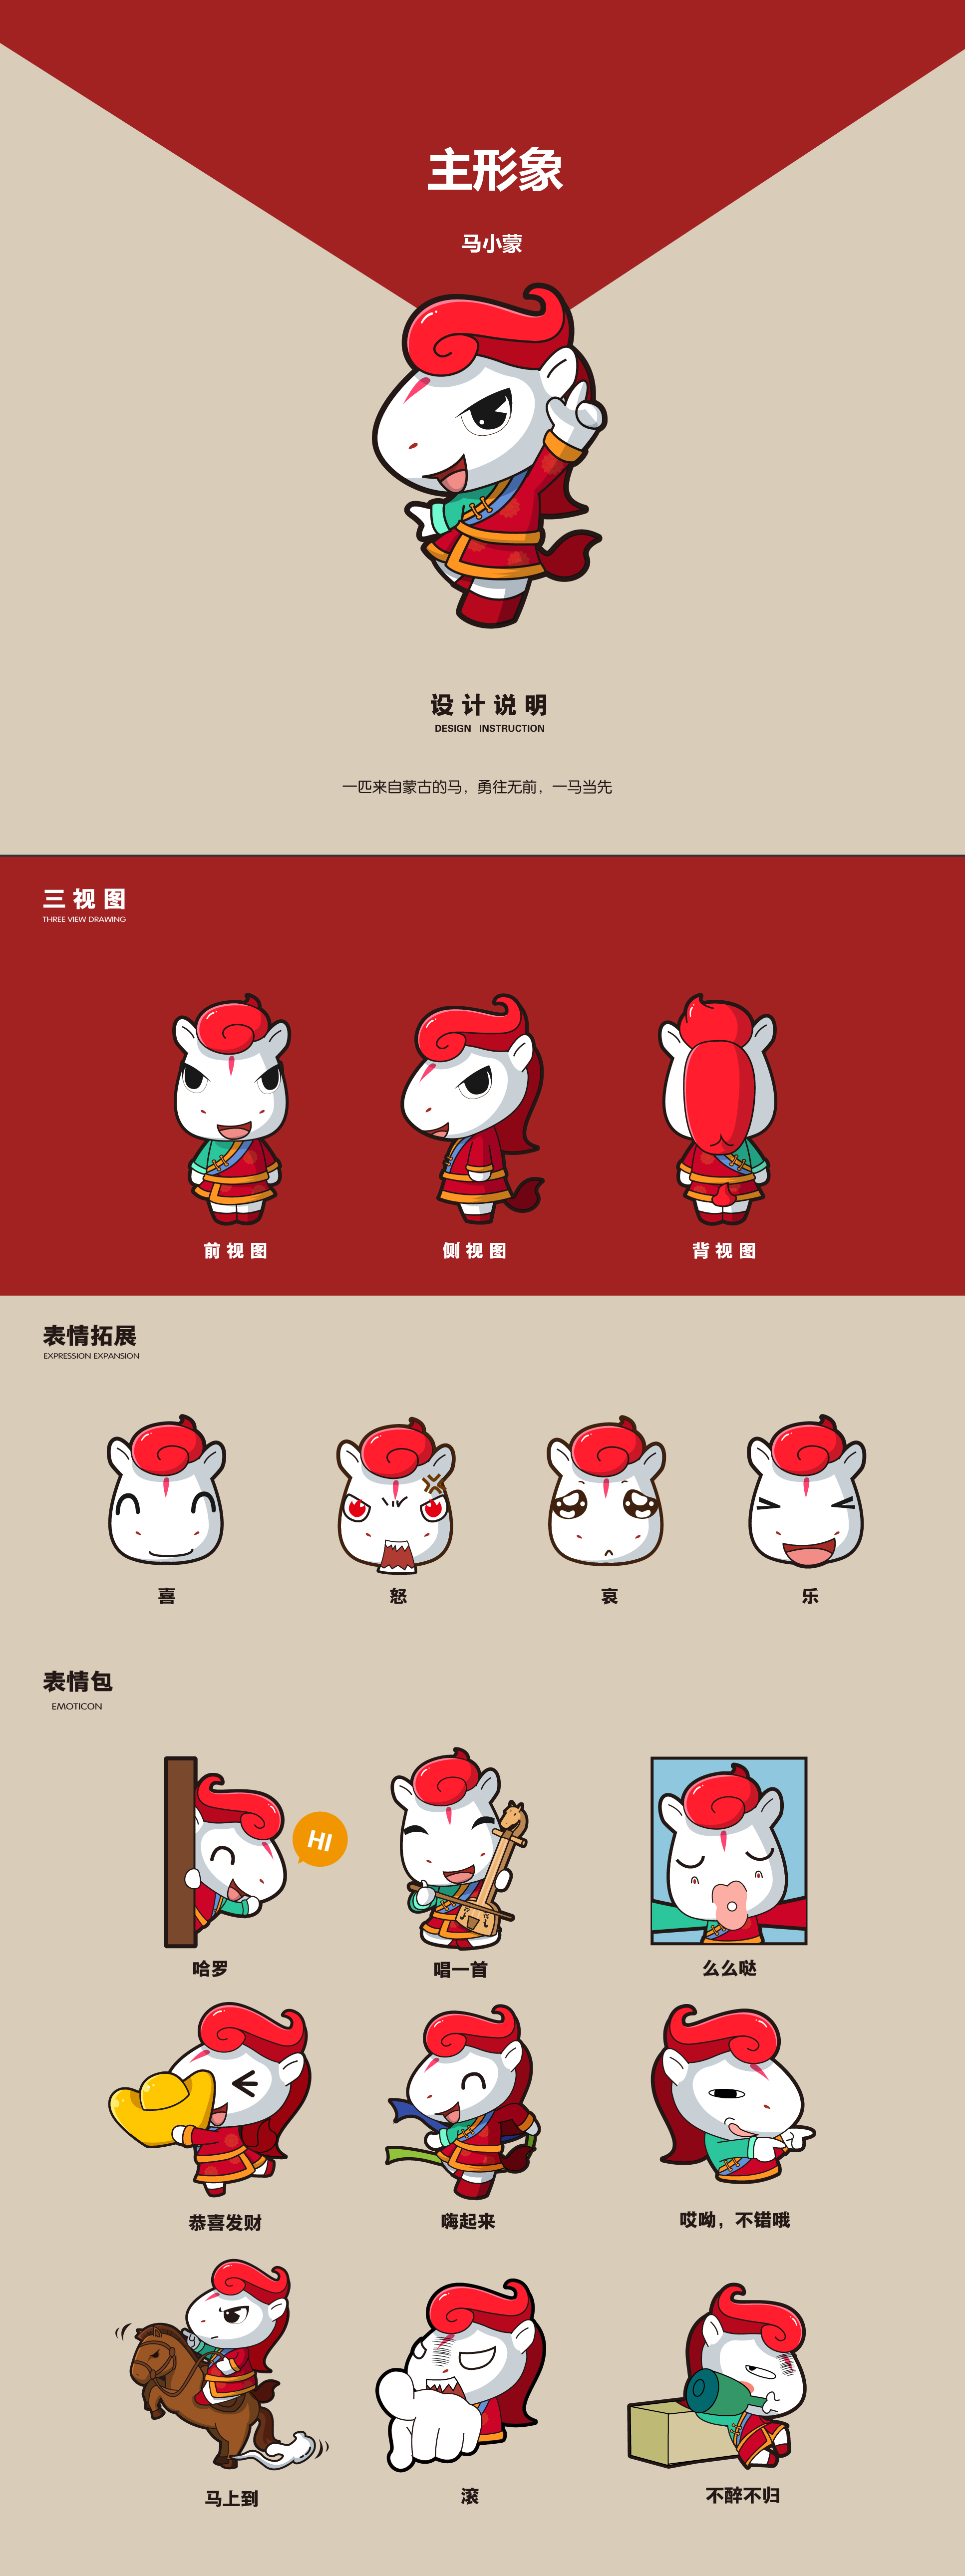 做了一个关于蒙古小马的吉祥物南京/设计爱好者/4年前/4182浏览影子lg